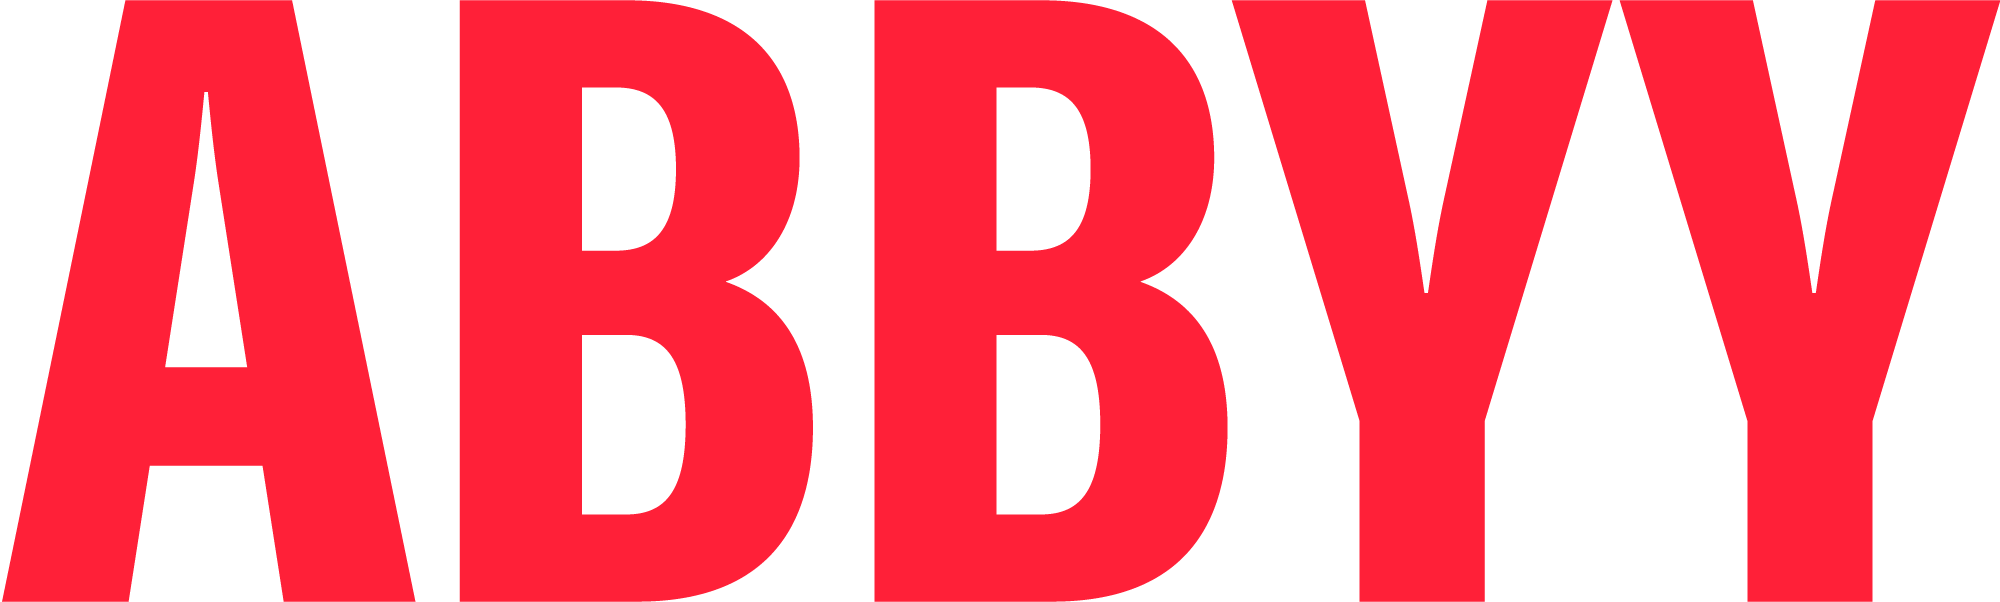 RGB_logo_ABBYY